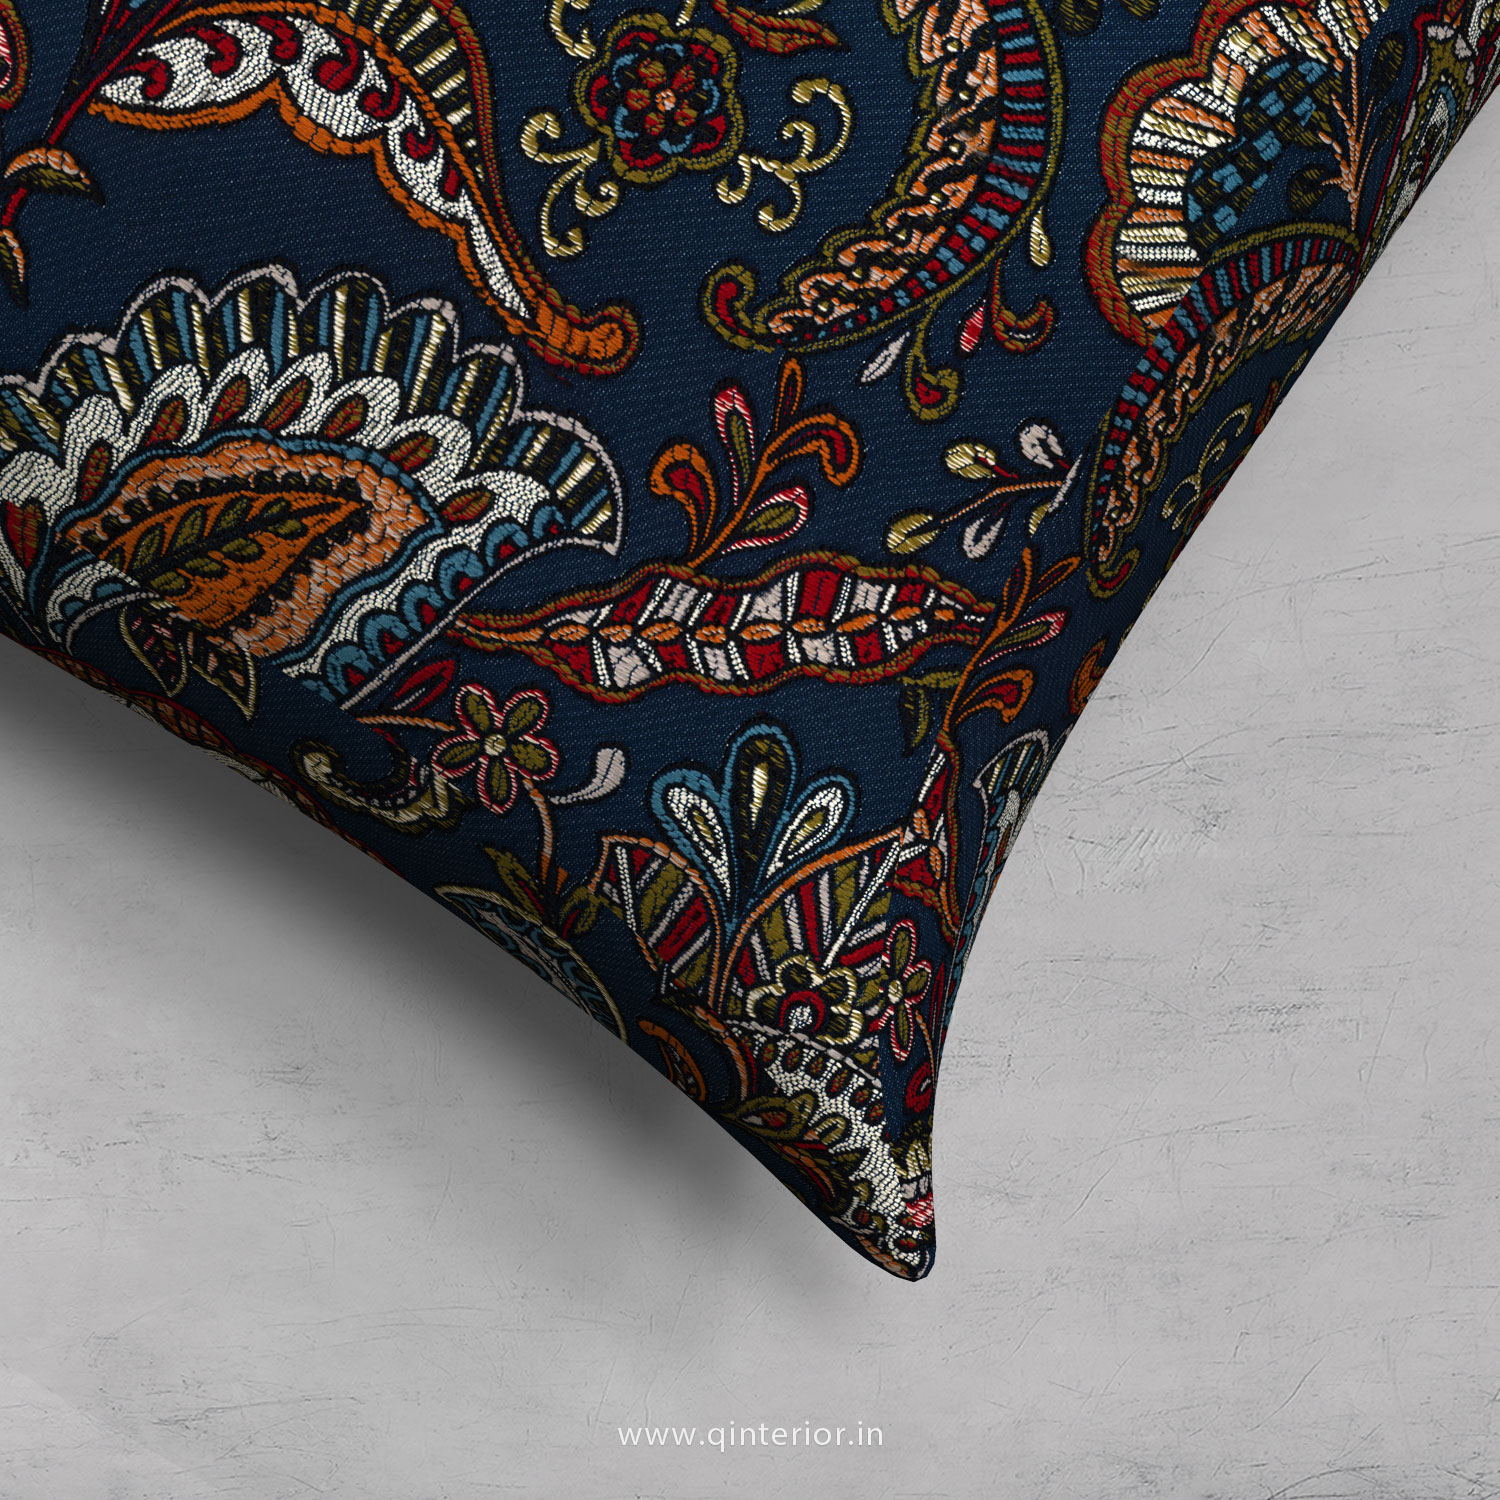 Cushion With Cushion Cover in Bargello - CUS001 BG01